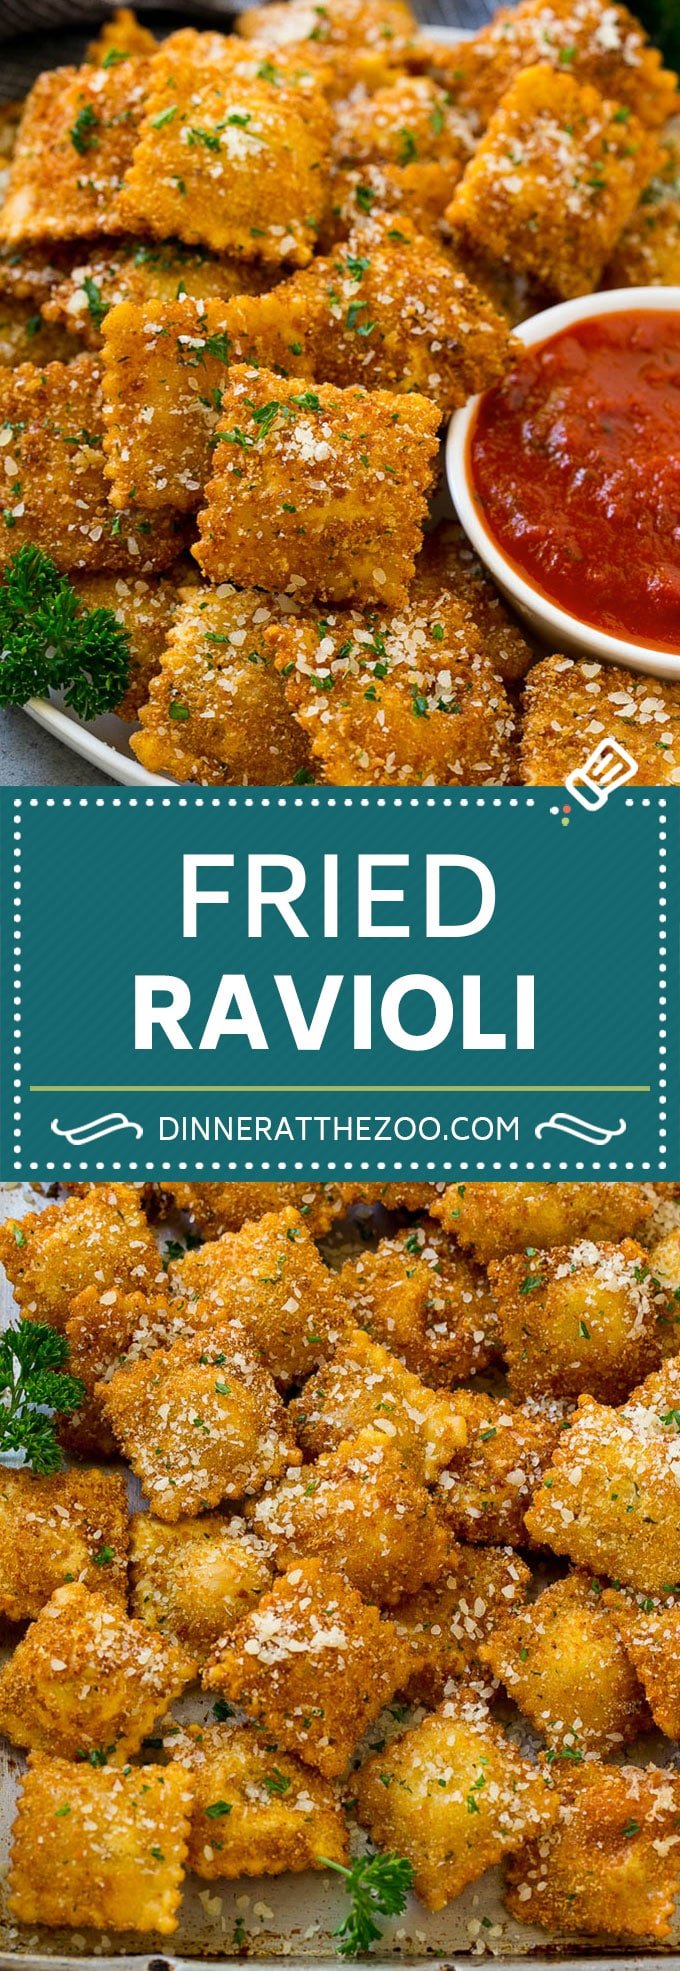 Fried Ravioli Recipe | Toasted Ravioli | Ravioli Recipe | Italian Appetizer #ravioli #appetizer #italian #pasta #dinneratthezoo